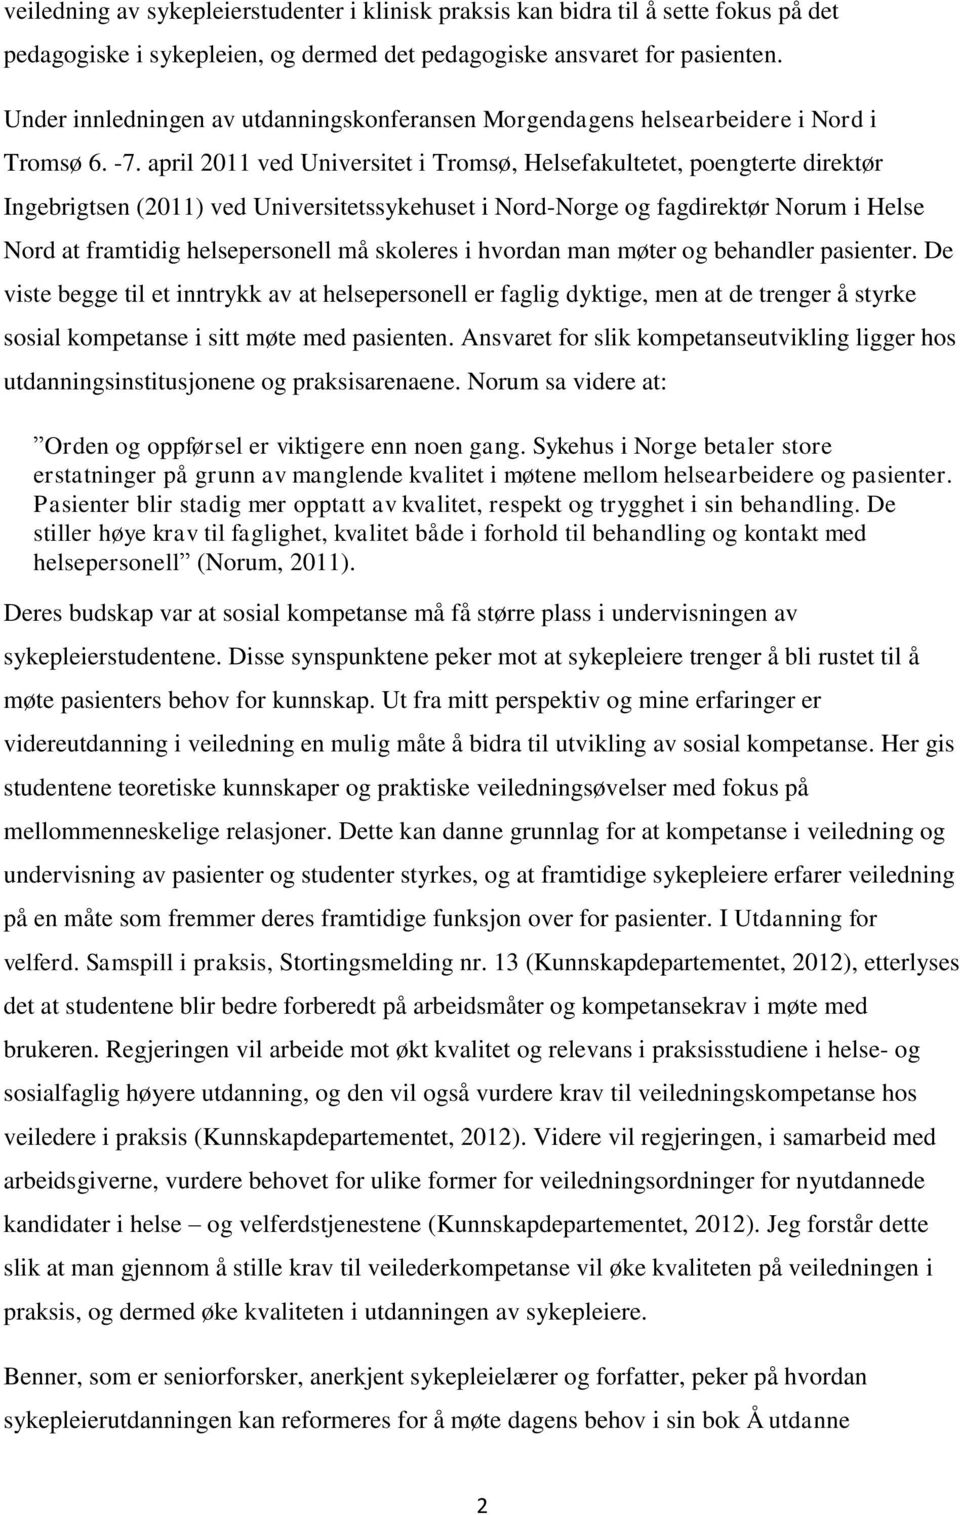 april 2011 ved Universitet i Tromsø, Helsefakultetet, poengterte direktør Ingebrigtsen (2011) ved Universitetssykehuset i Nord-Norge og fagdirektør Norum i Helse Nord at framtidig helsepersonell må